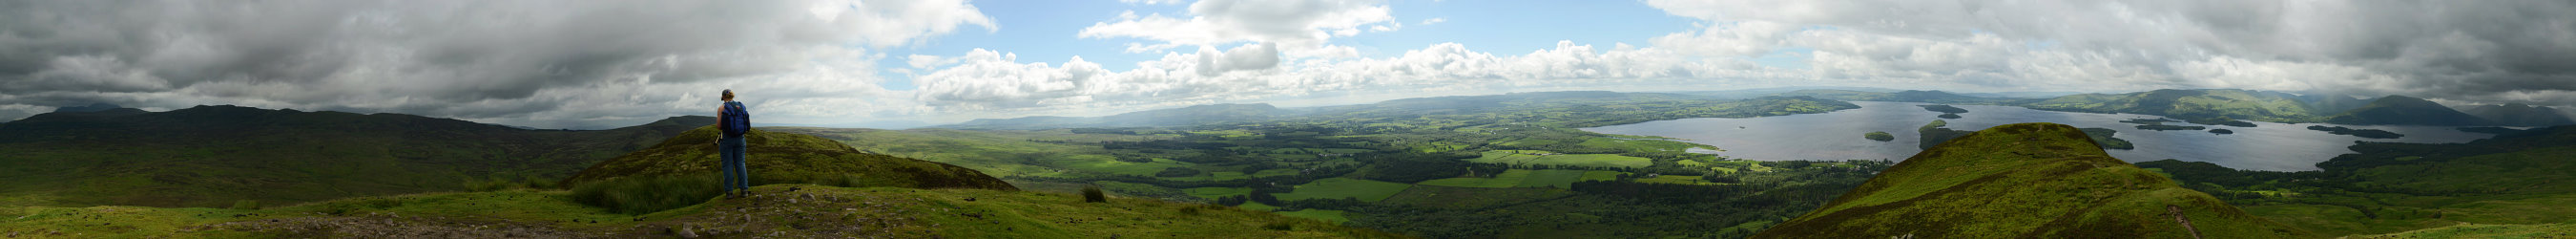 Bild: 360°-Panorama auf dem Conic Hill